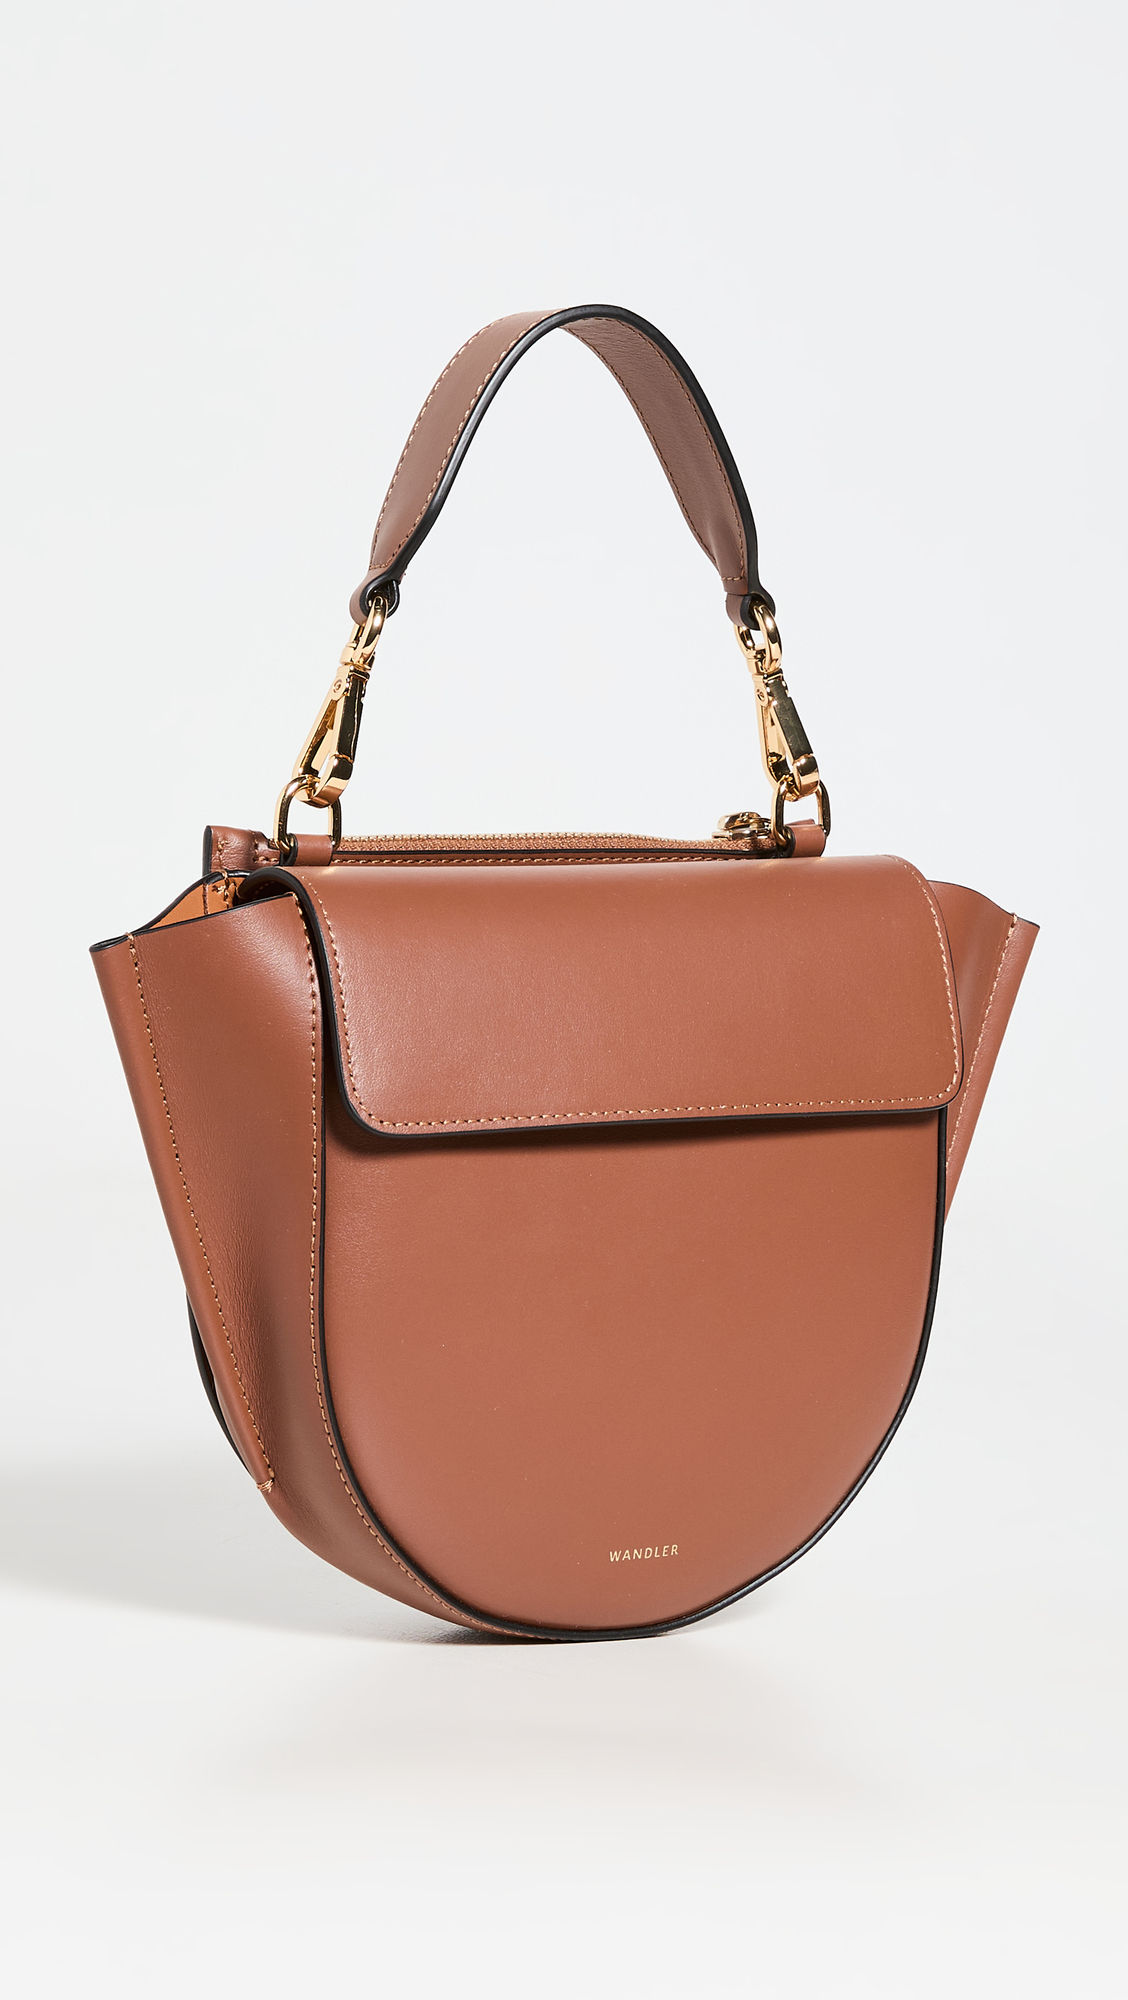 shopbop designer bags on sale 307448 1684962440541